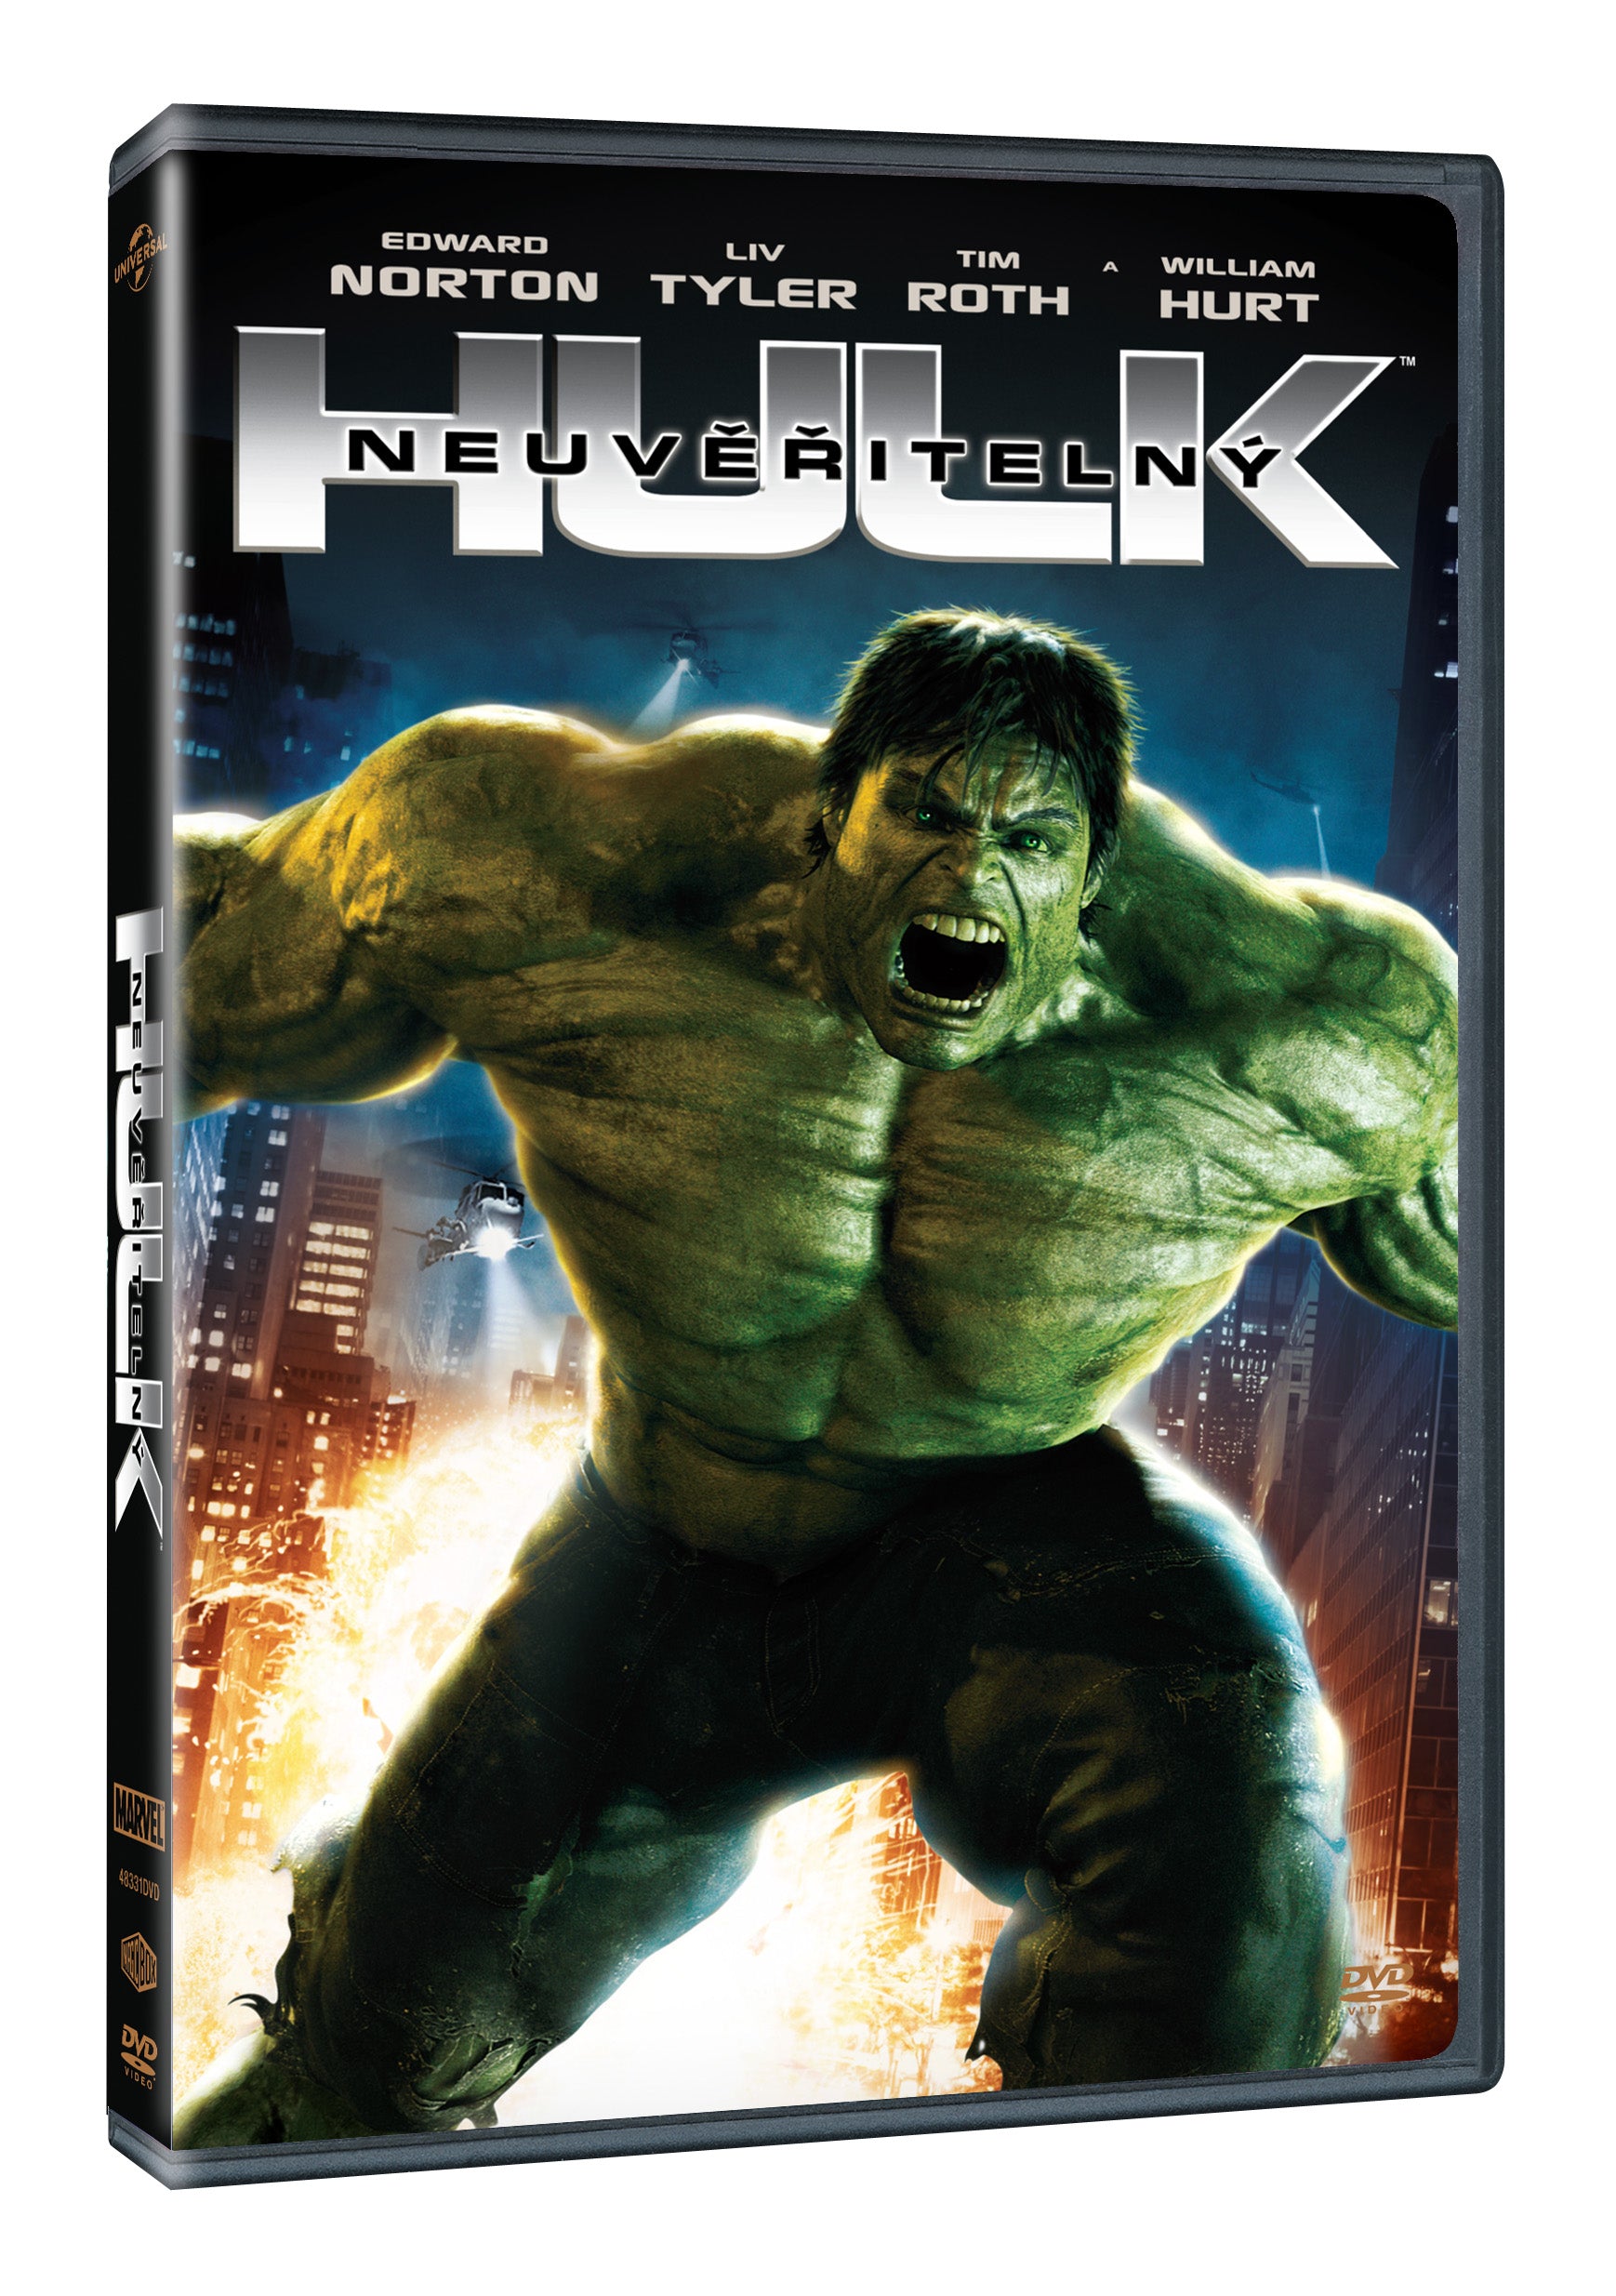 Neuveritelny Hulk DVD / Der unglaubliche Hulk